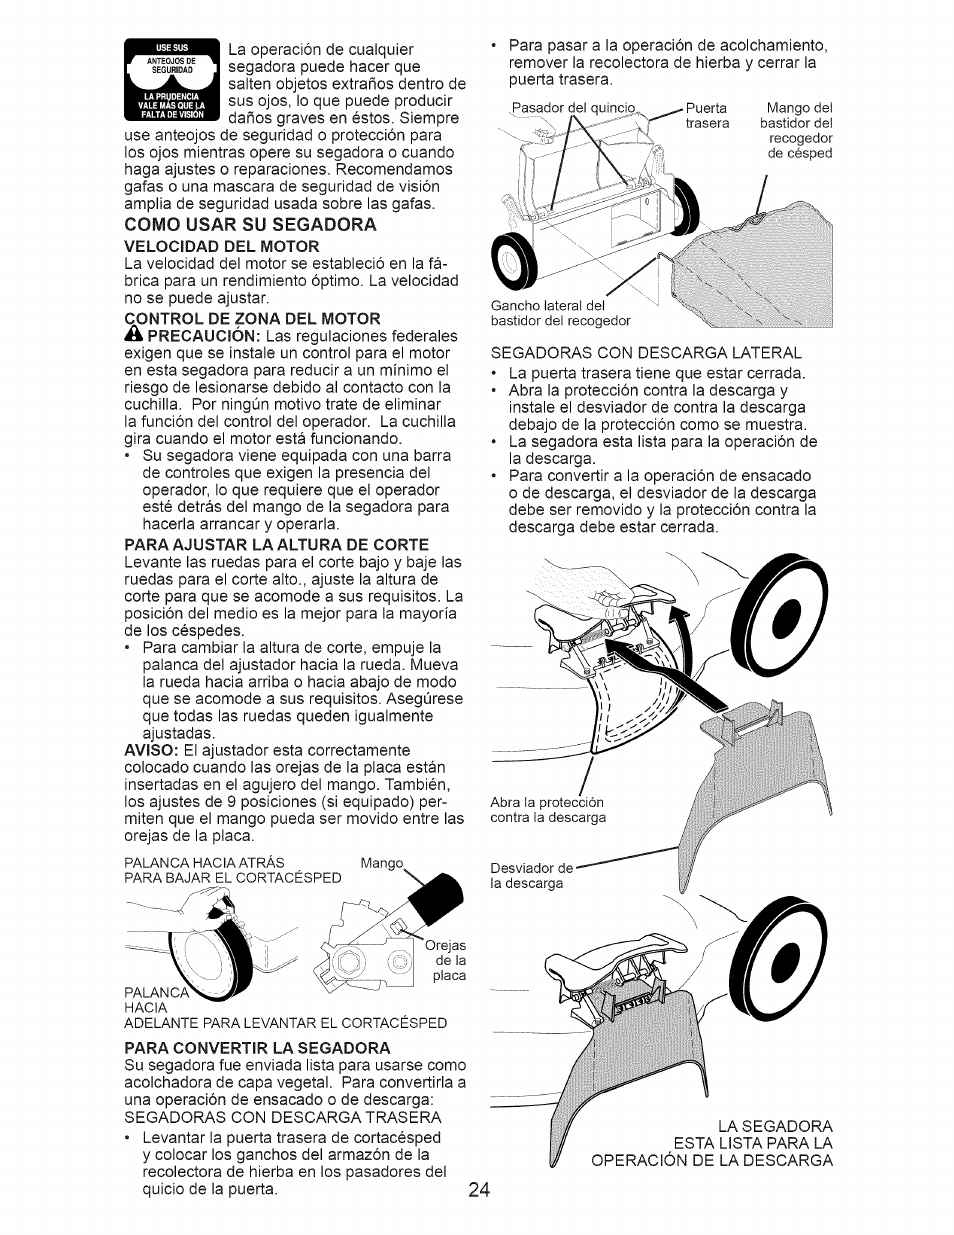 Como usar su segadora velocidad del motor | Craftsman 917.388201 User Manual  | Page 24 / 44 | Original mode